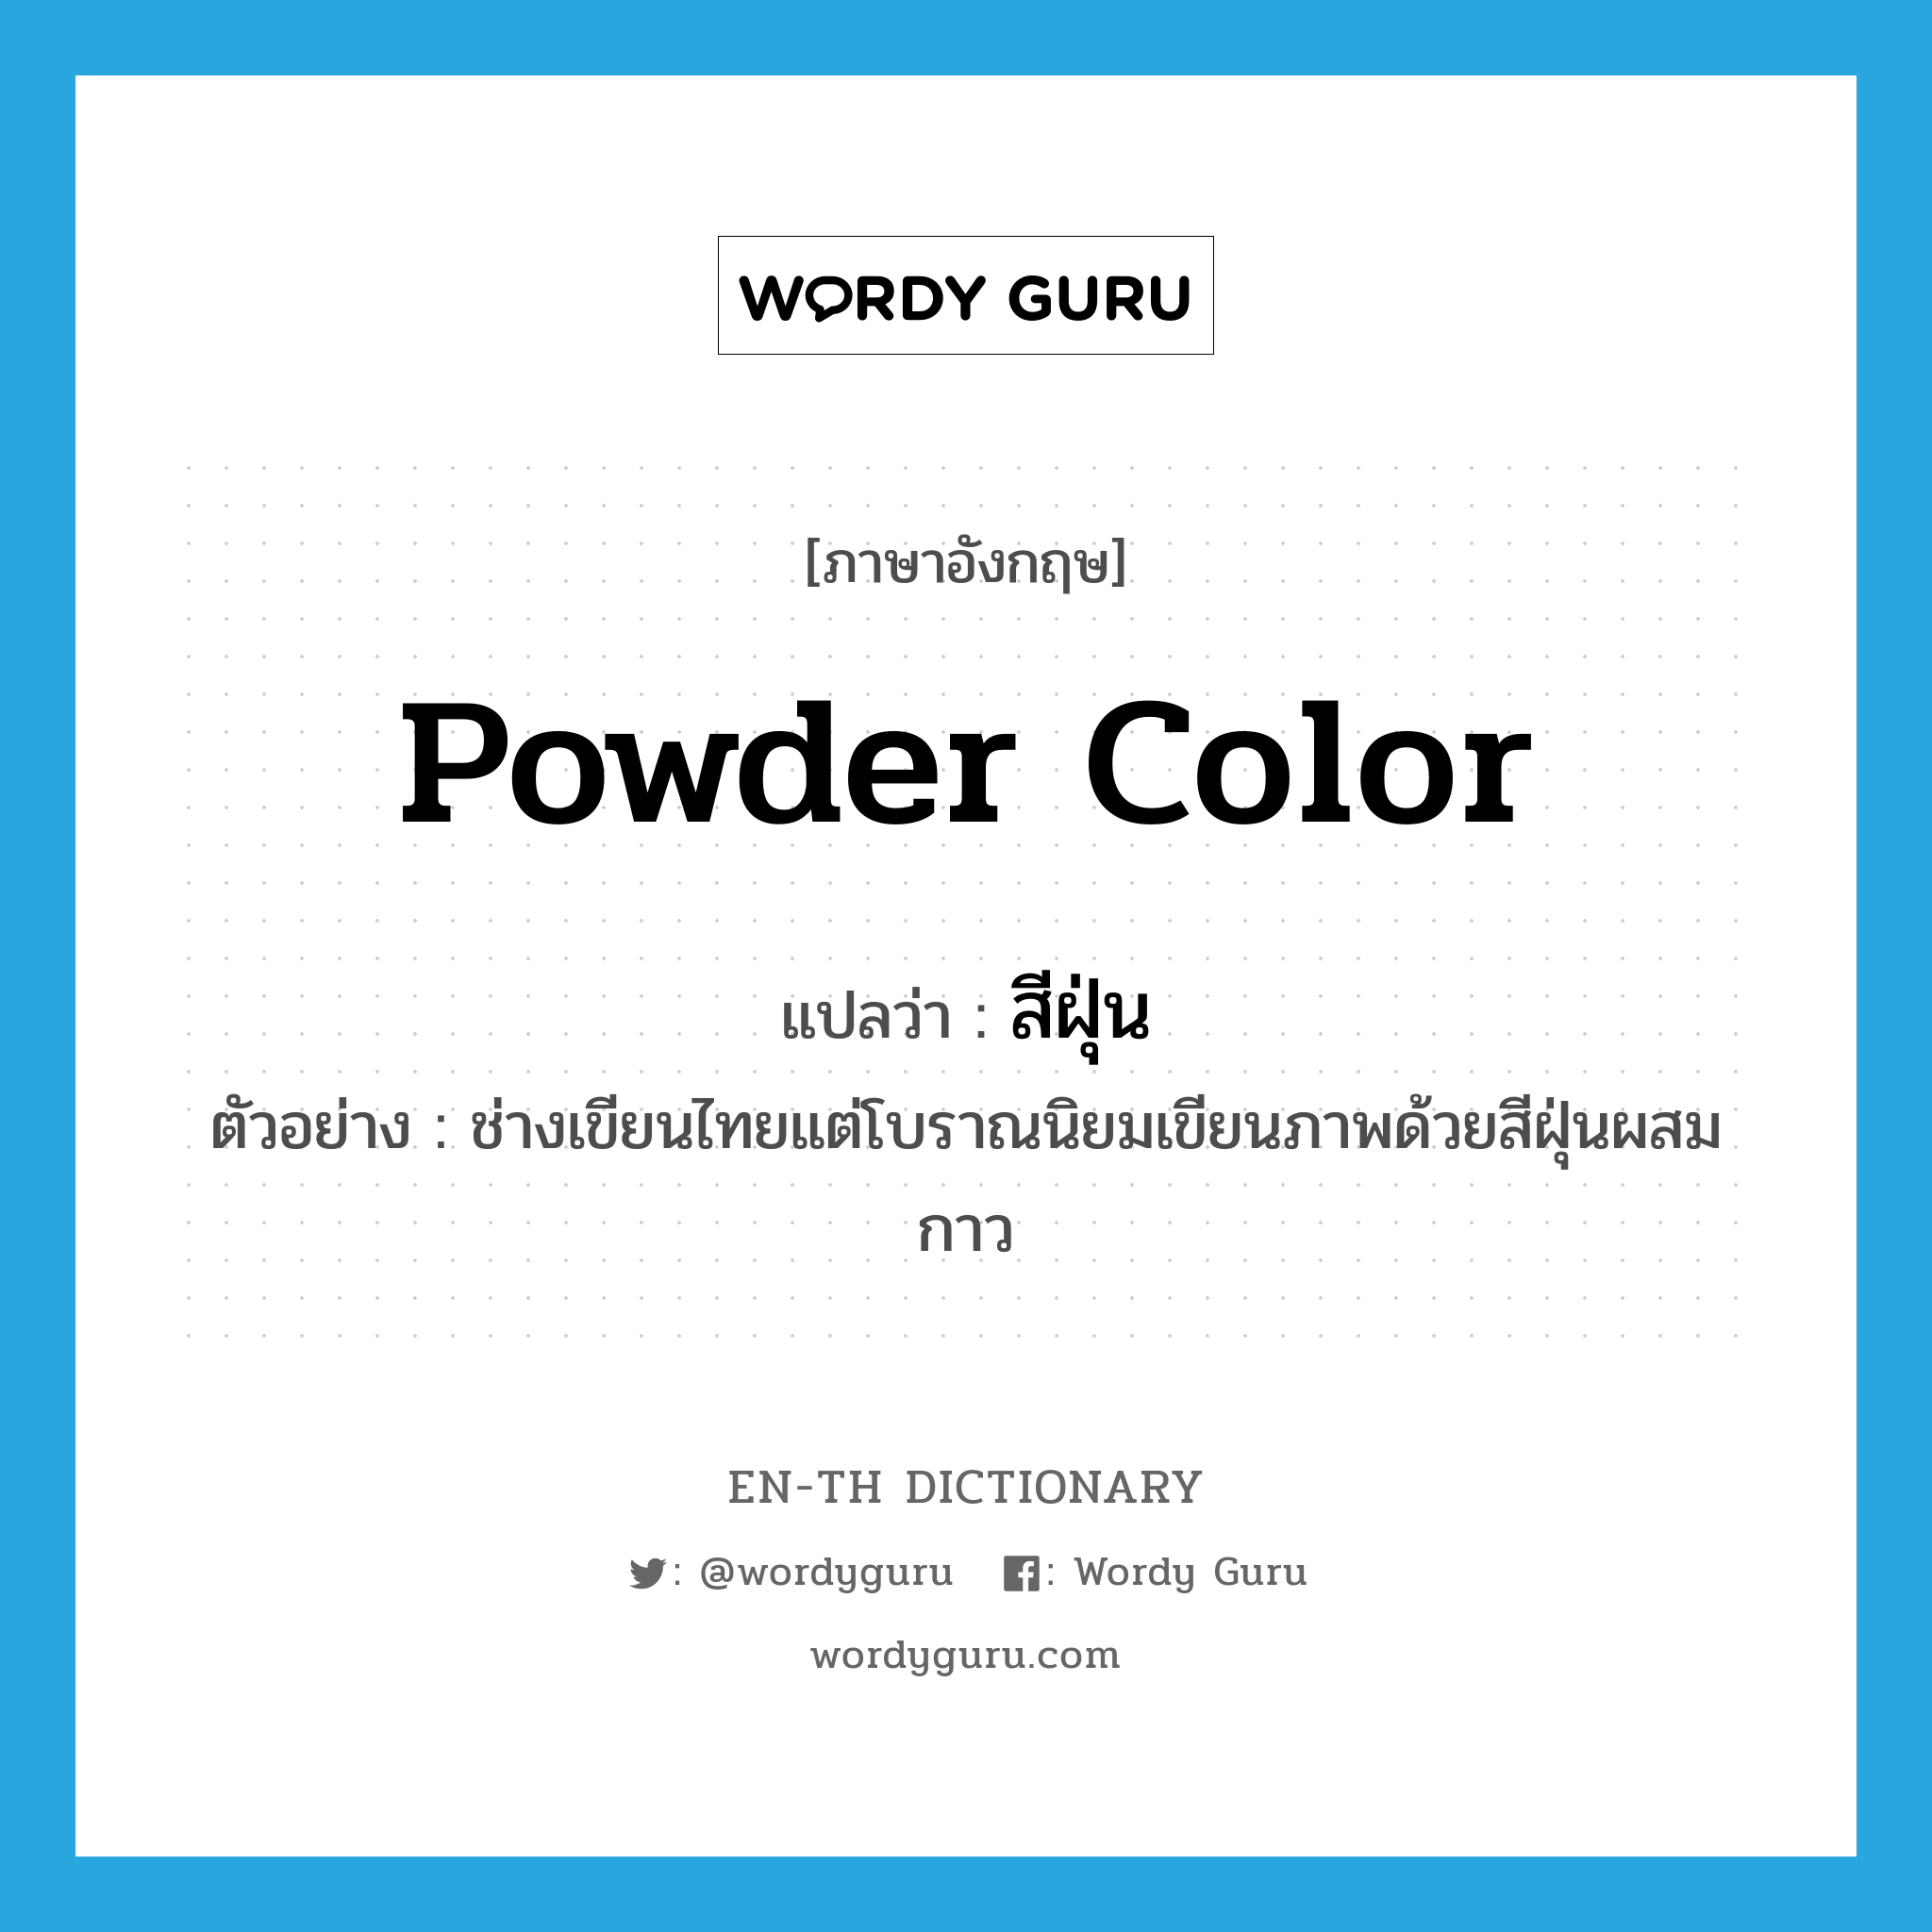 powder color แปลว่า?, คำศัพท์ภาษาอังกฤษ powder color แปลว่า สีฝุ่น ประเภท N ตัวอย่าง ช่างเขียนไทยแต่โบราณนิยมเขียนภาพด้วยสีฝุ่นผสมกาว หมวด N